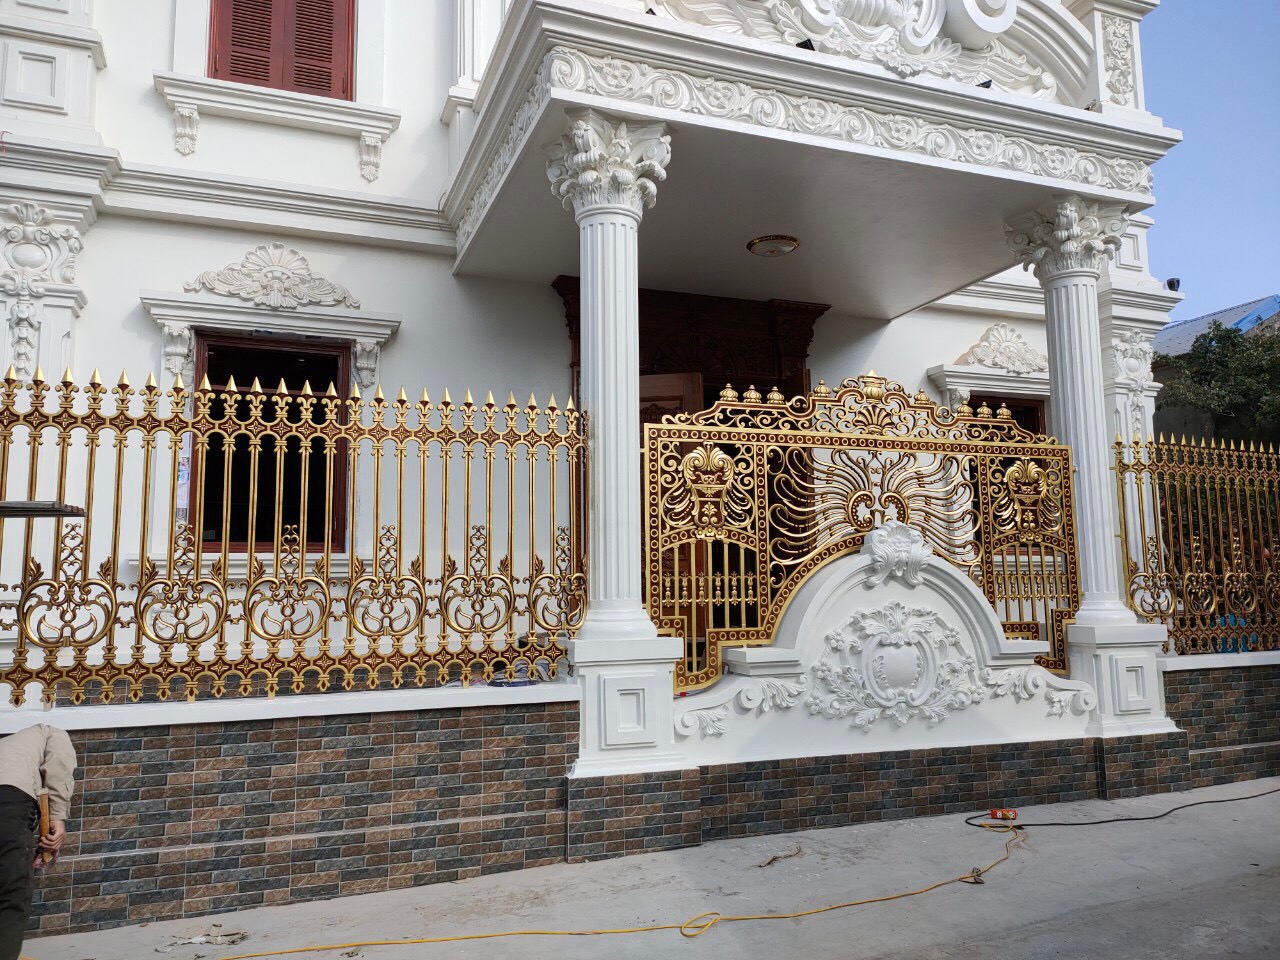 Mẫu hàng rào nhôm đúc sơn màu vàng đồng nổi bật trước ngôi nhà trắng